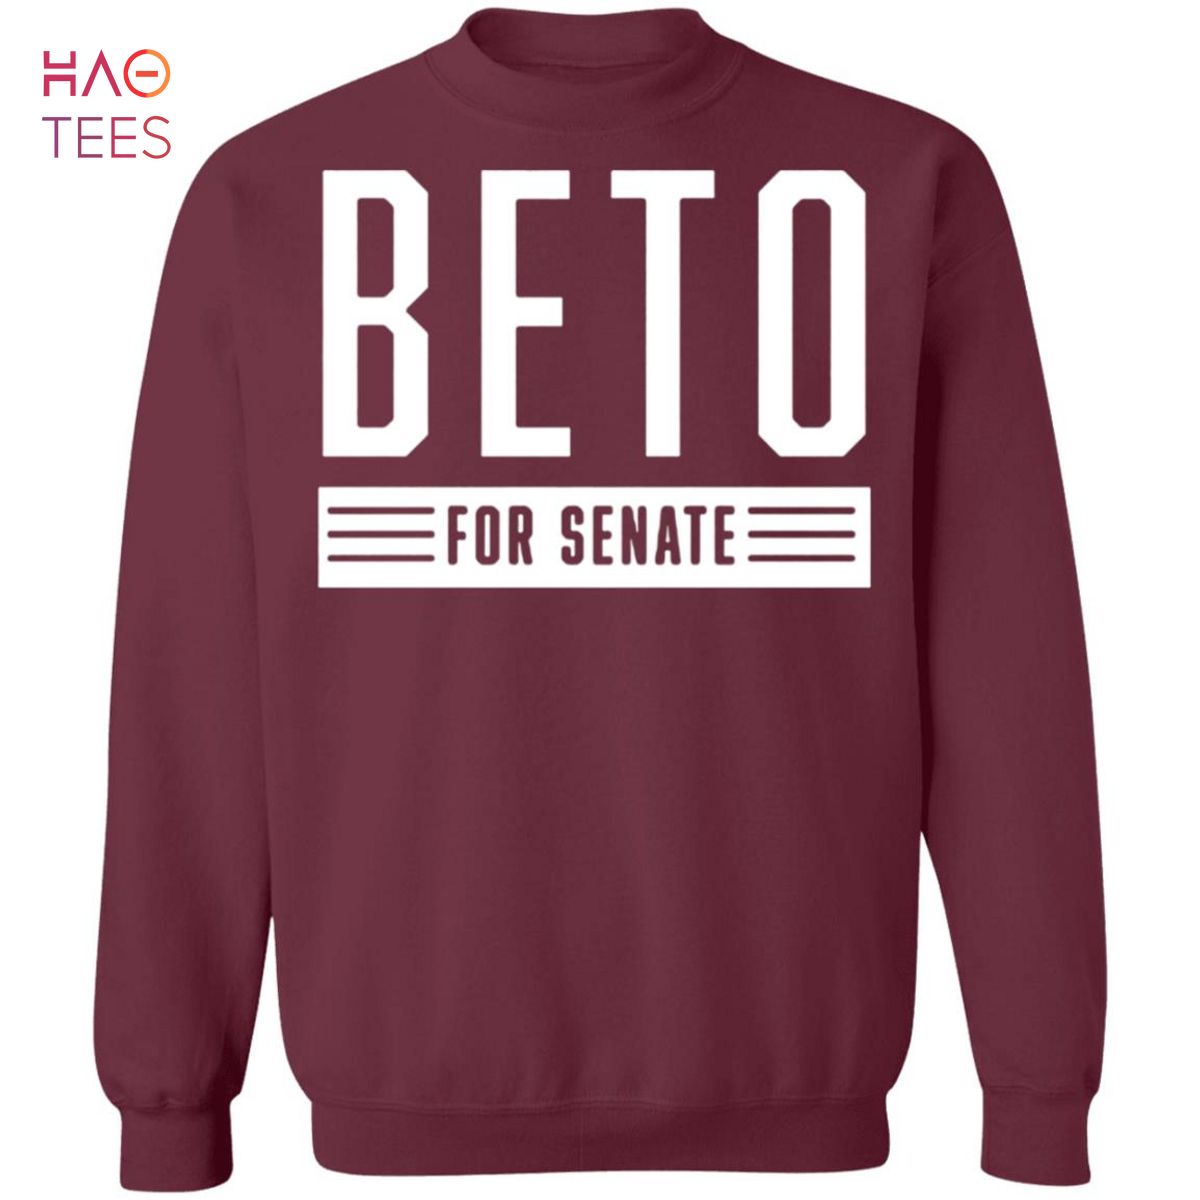 BEST Beto For Senate Sweater